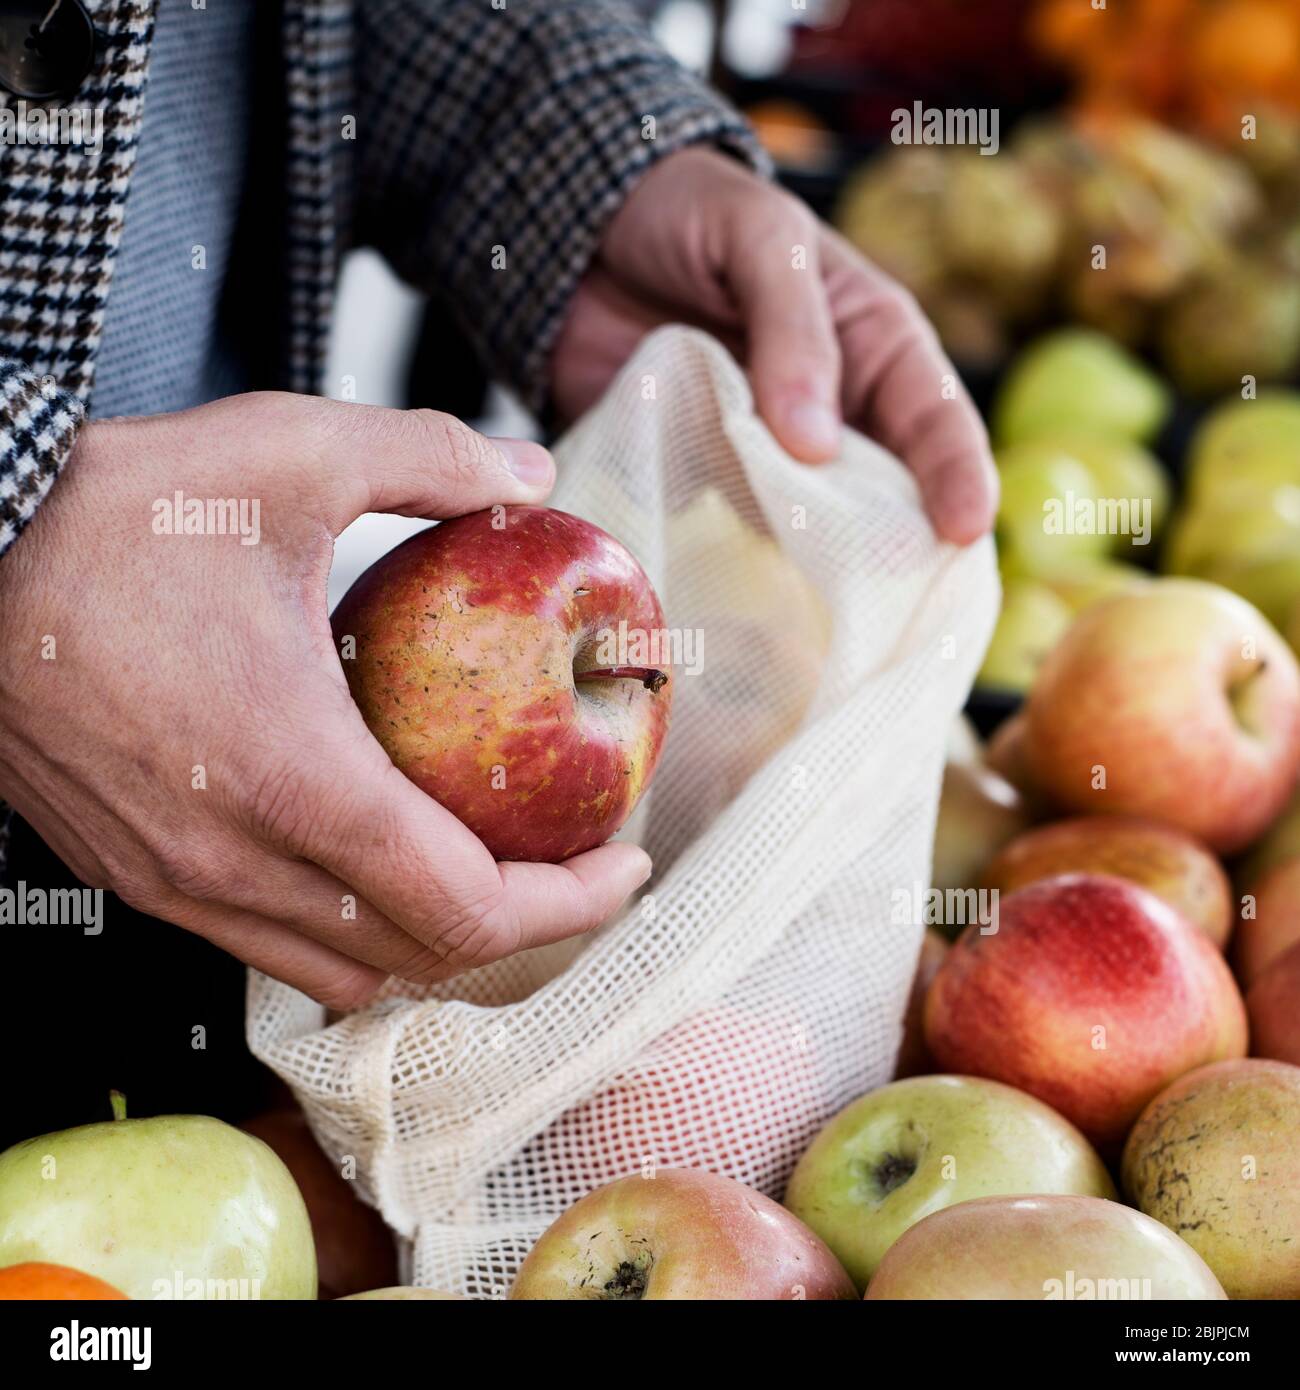 Nahaufnahme eines Mannes, der in einem Gemüsehändler einkaufen geht, indem er einige Äpfel in einen wiederverwendbaren Stoffbeutel legt, um die Plastikverschmutzung zu verringern Stockfoto